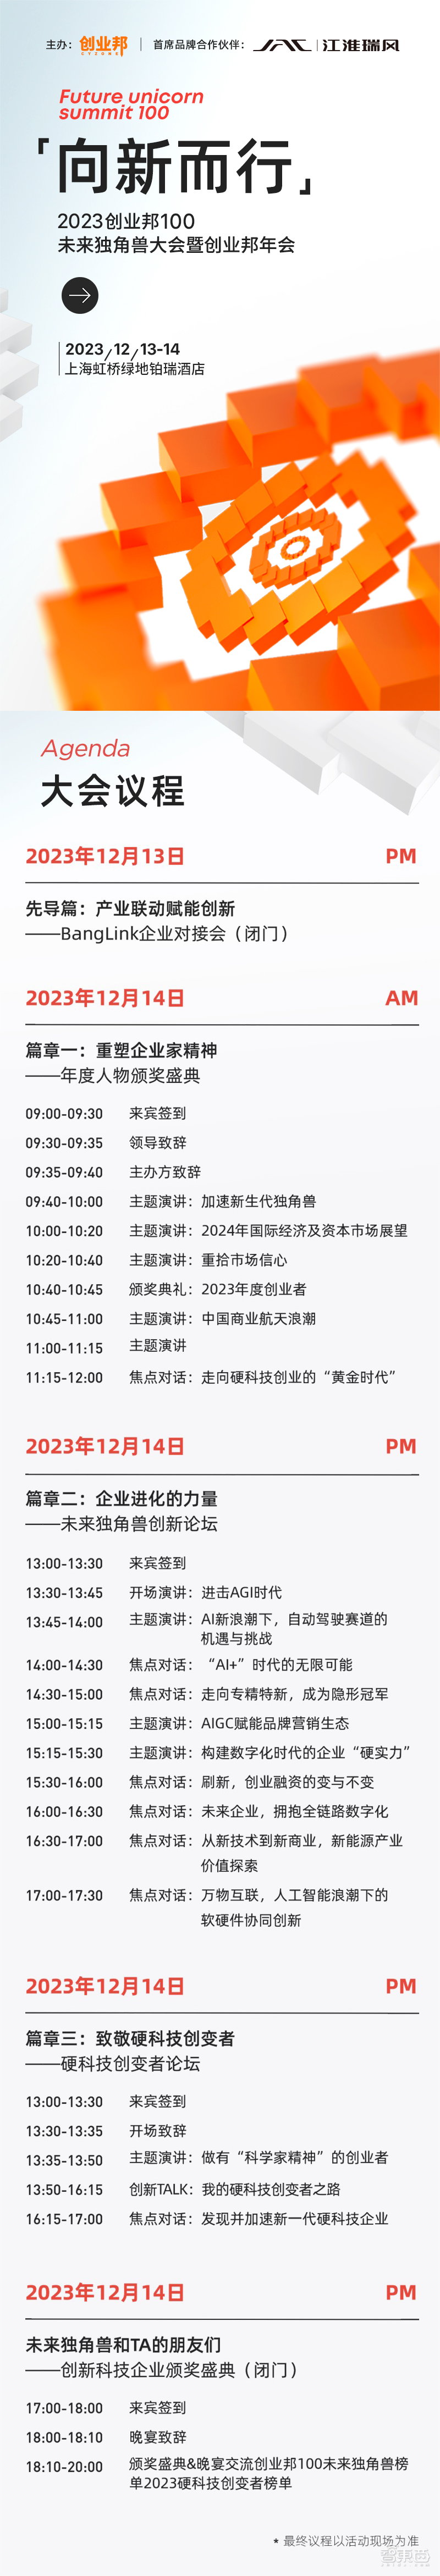 2023创业邦100未来独角兽大会即将在上海举办